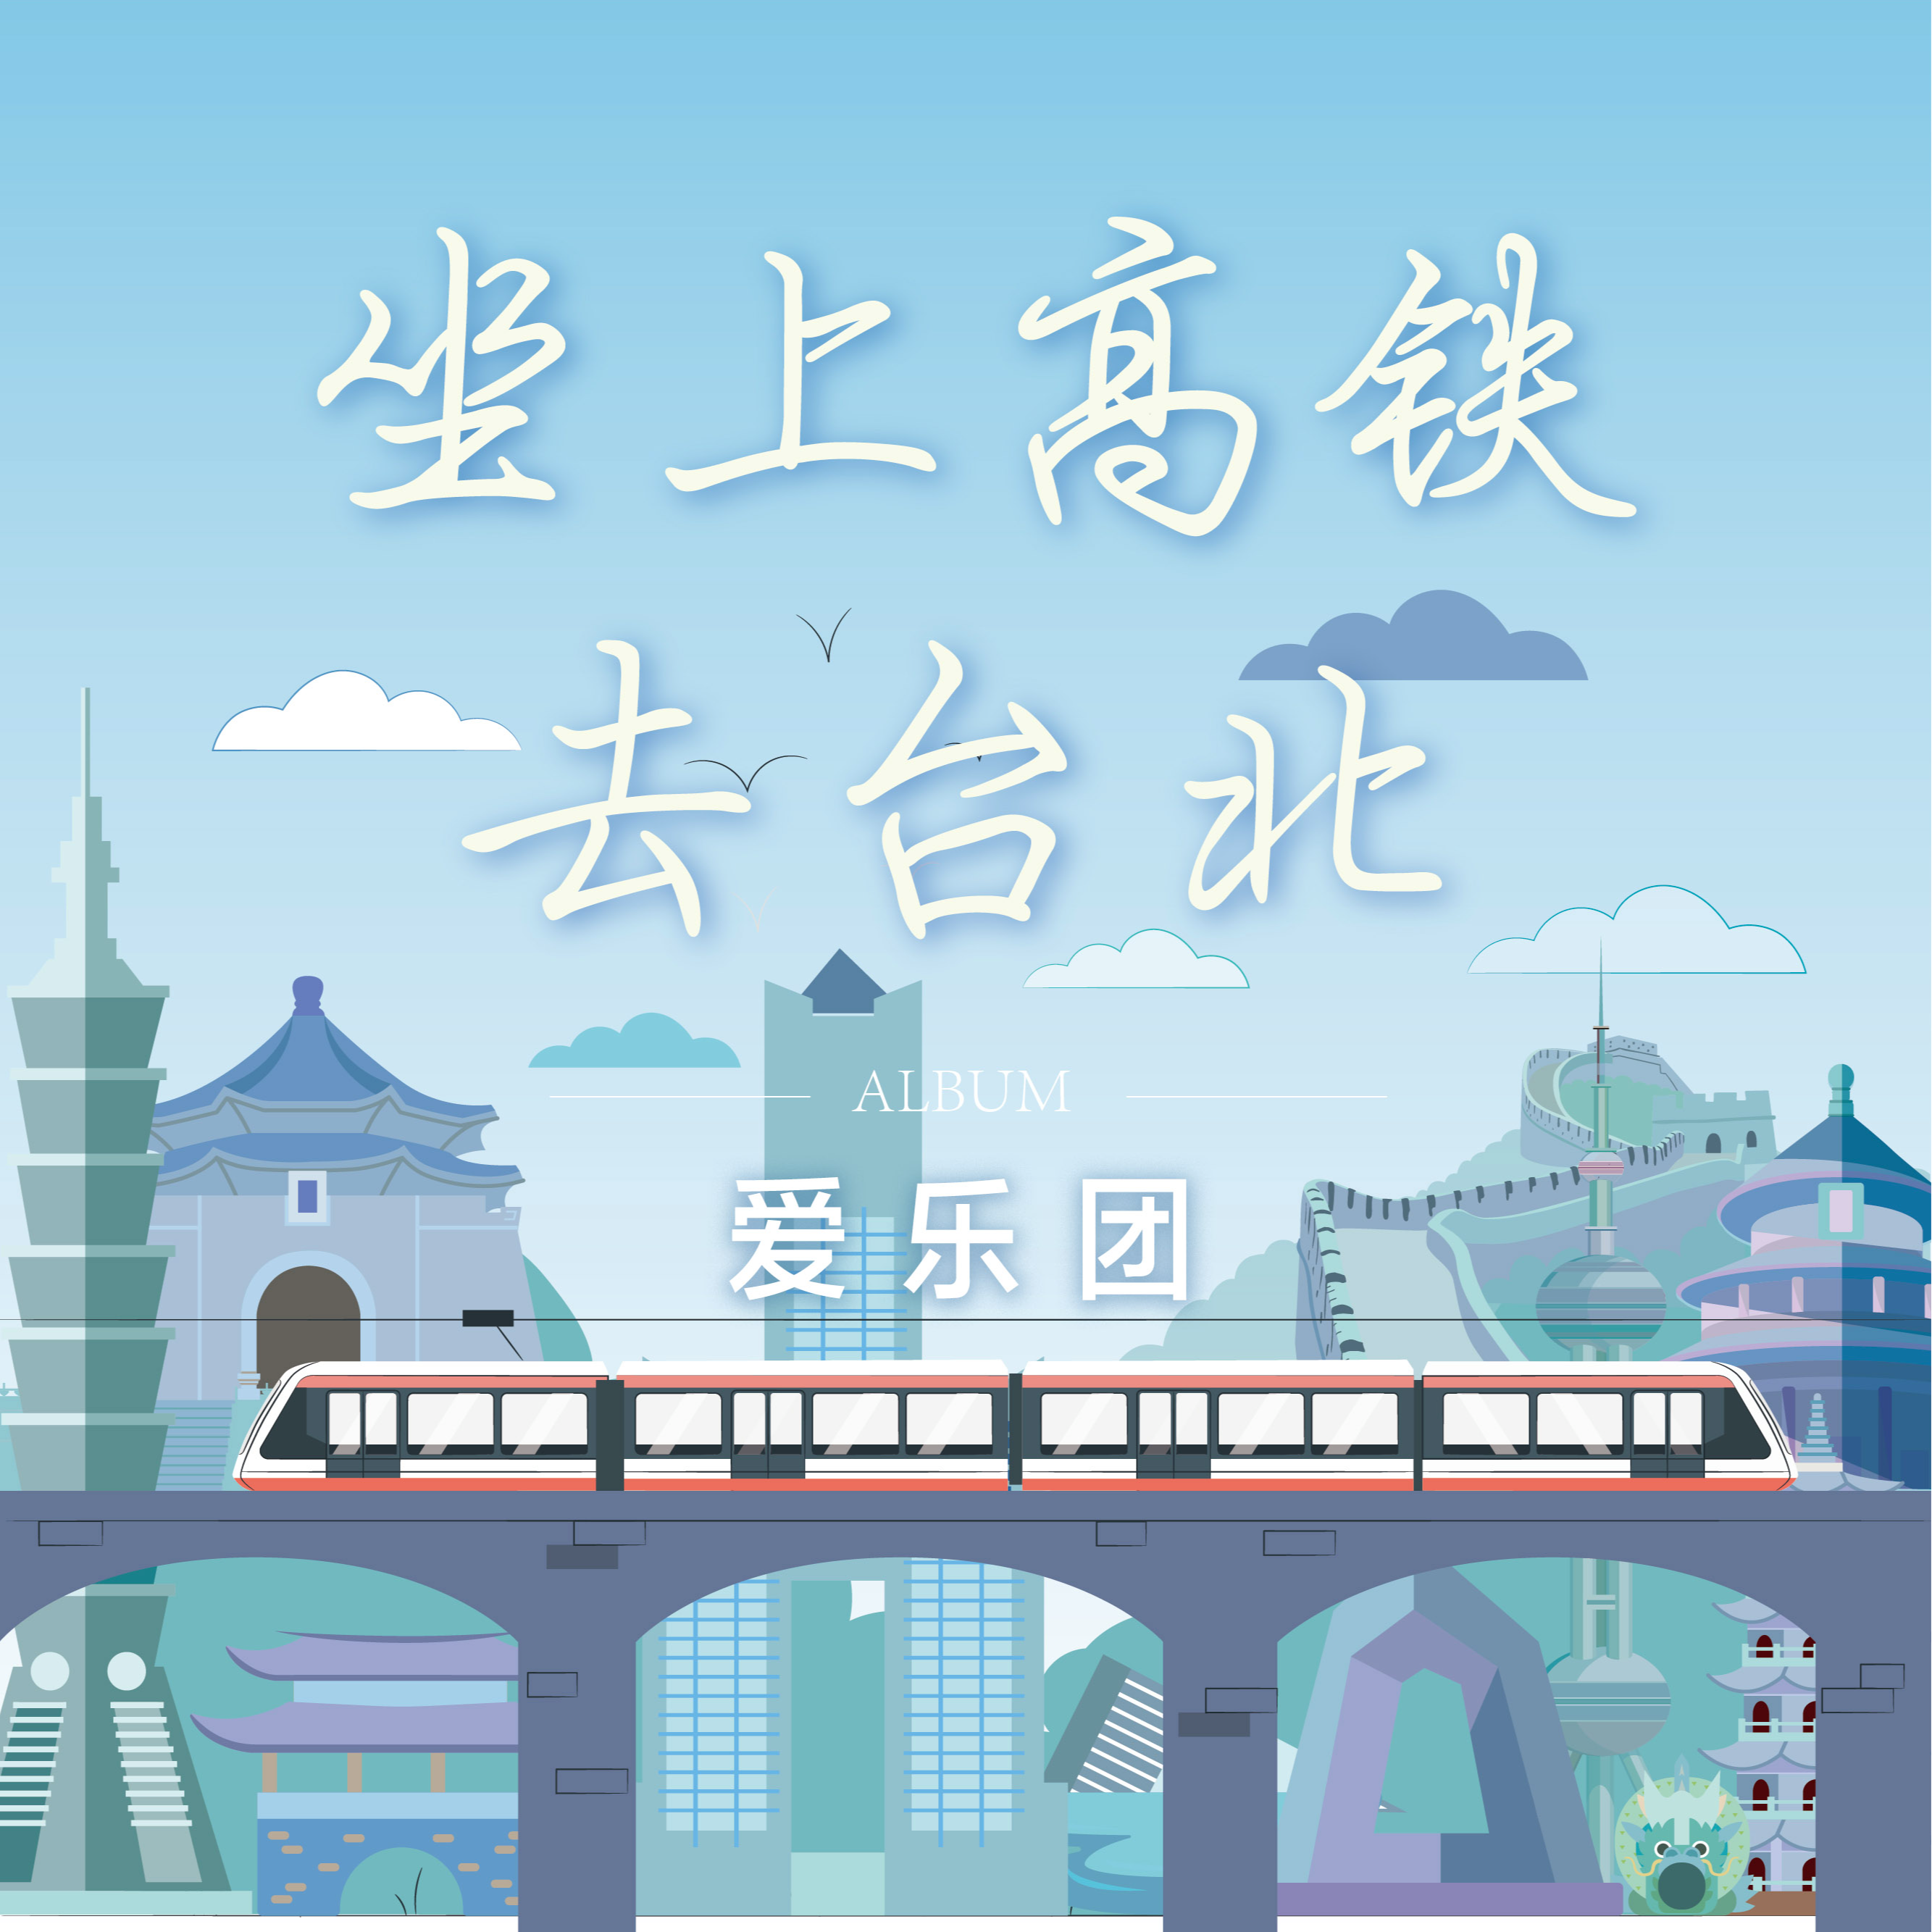 坐上高铁去台北歌词 歌手爱乐团王超-专辑坐上高铁去台北-单曲《坐上高铁去台北》LRC歌词下载